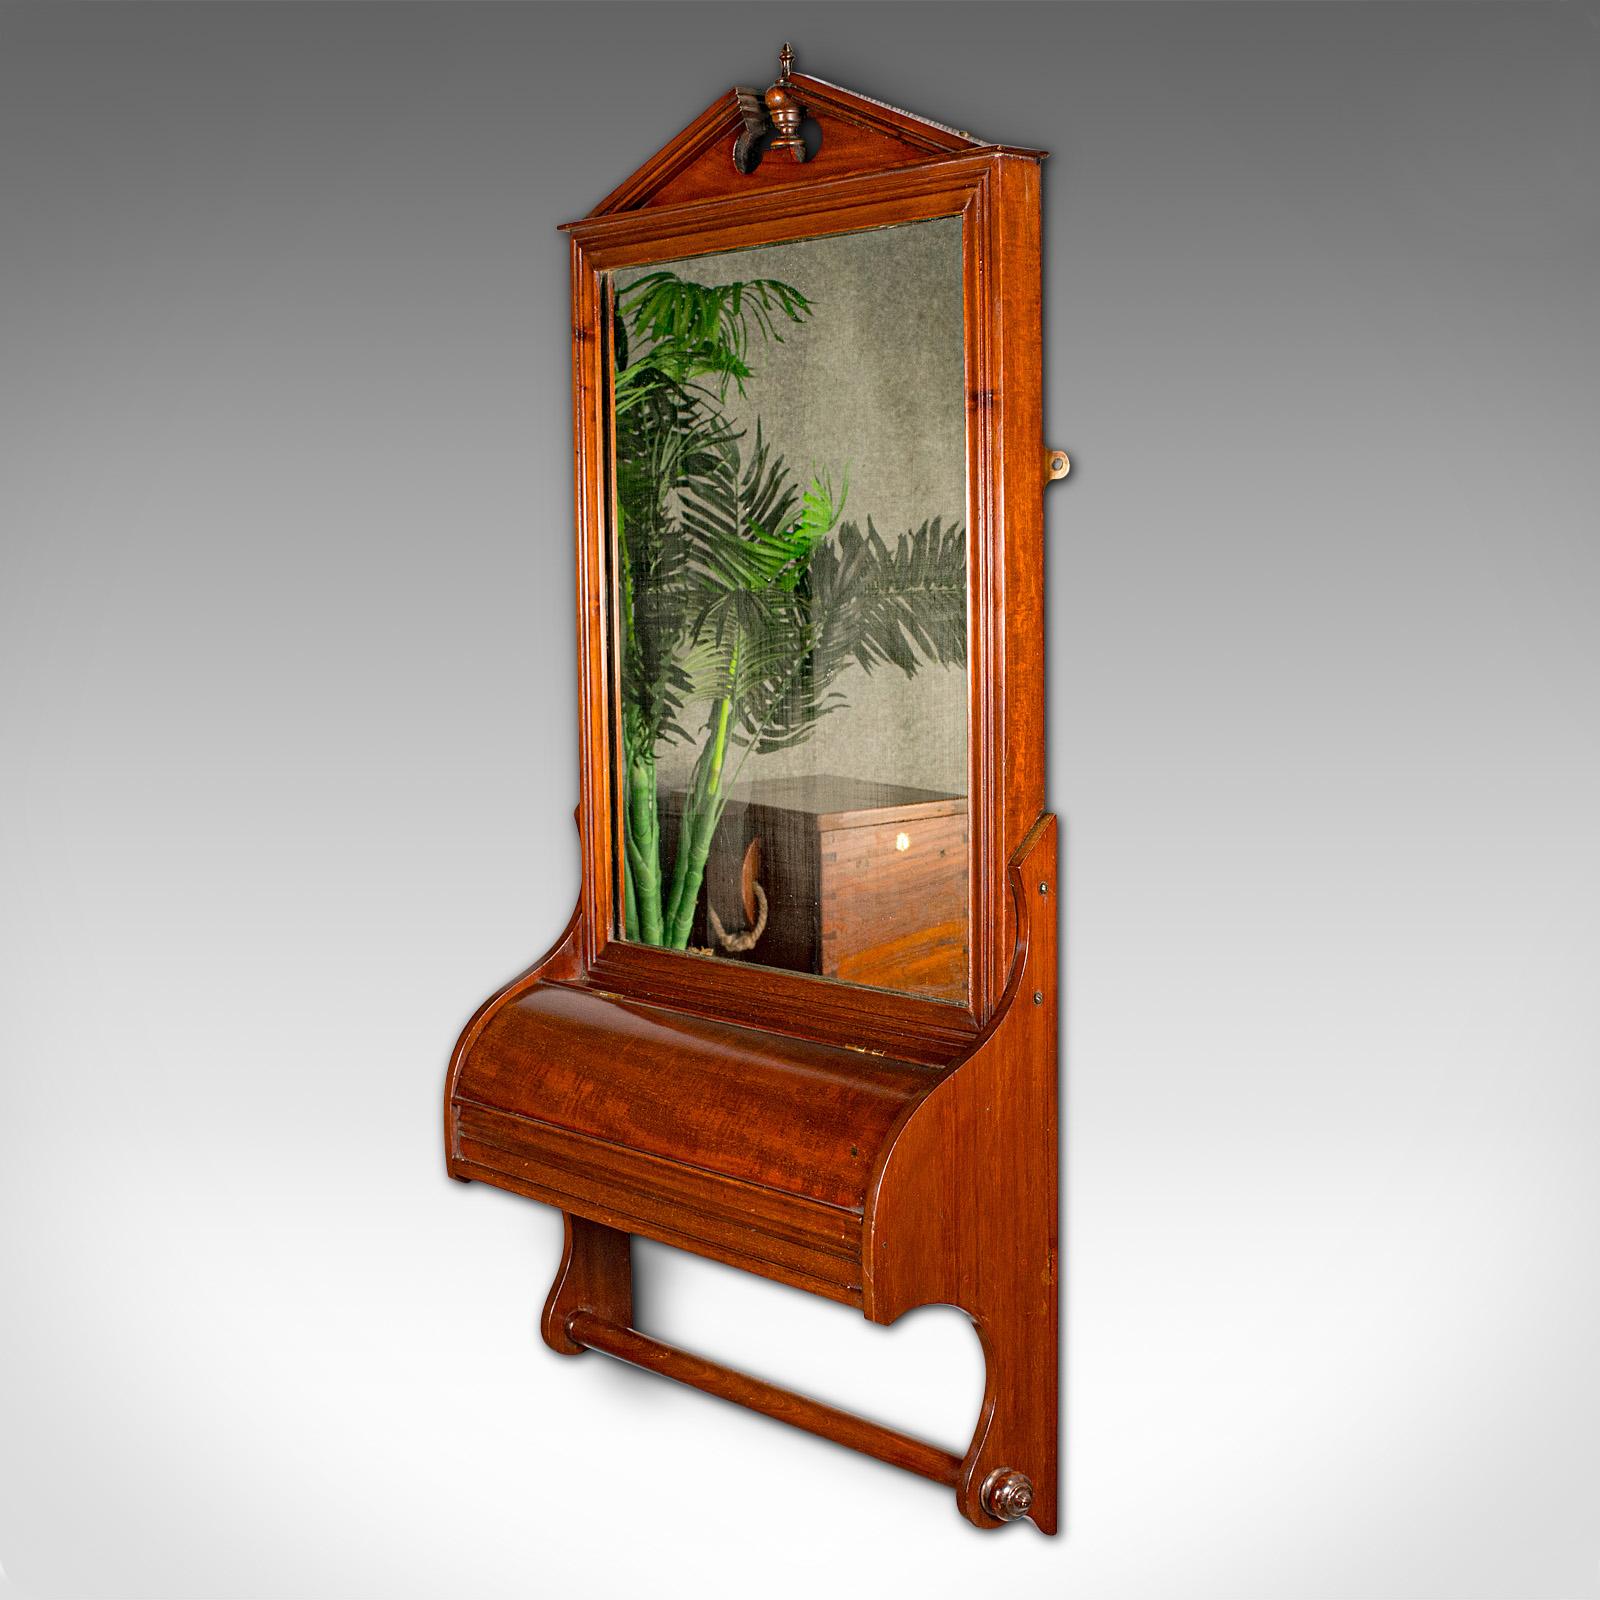 British Antique Valet Mirror, Glove Box, English, Reception, Scarf Rail, Victorian, 1900 For Sale